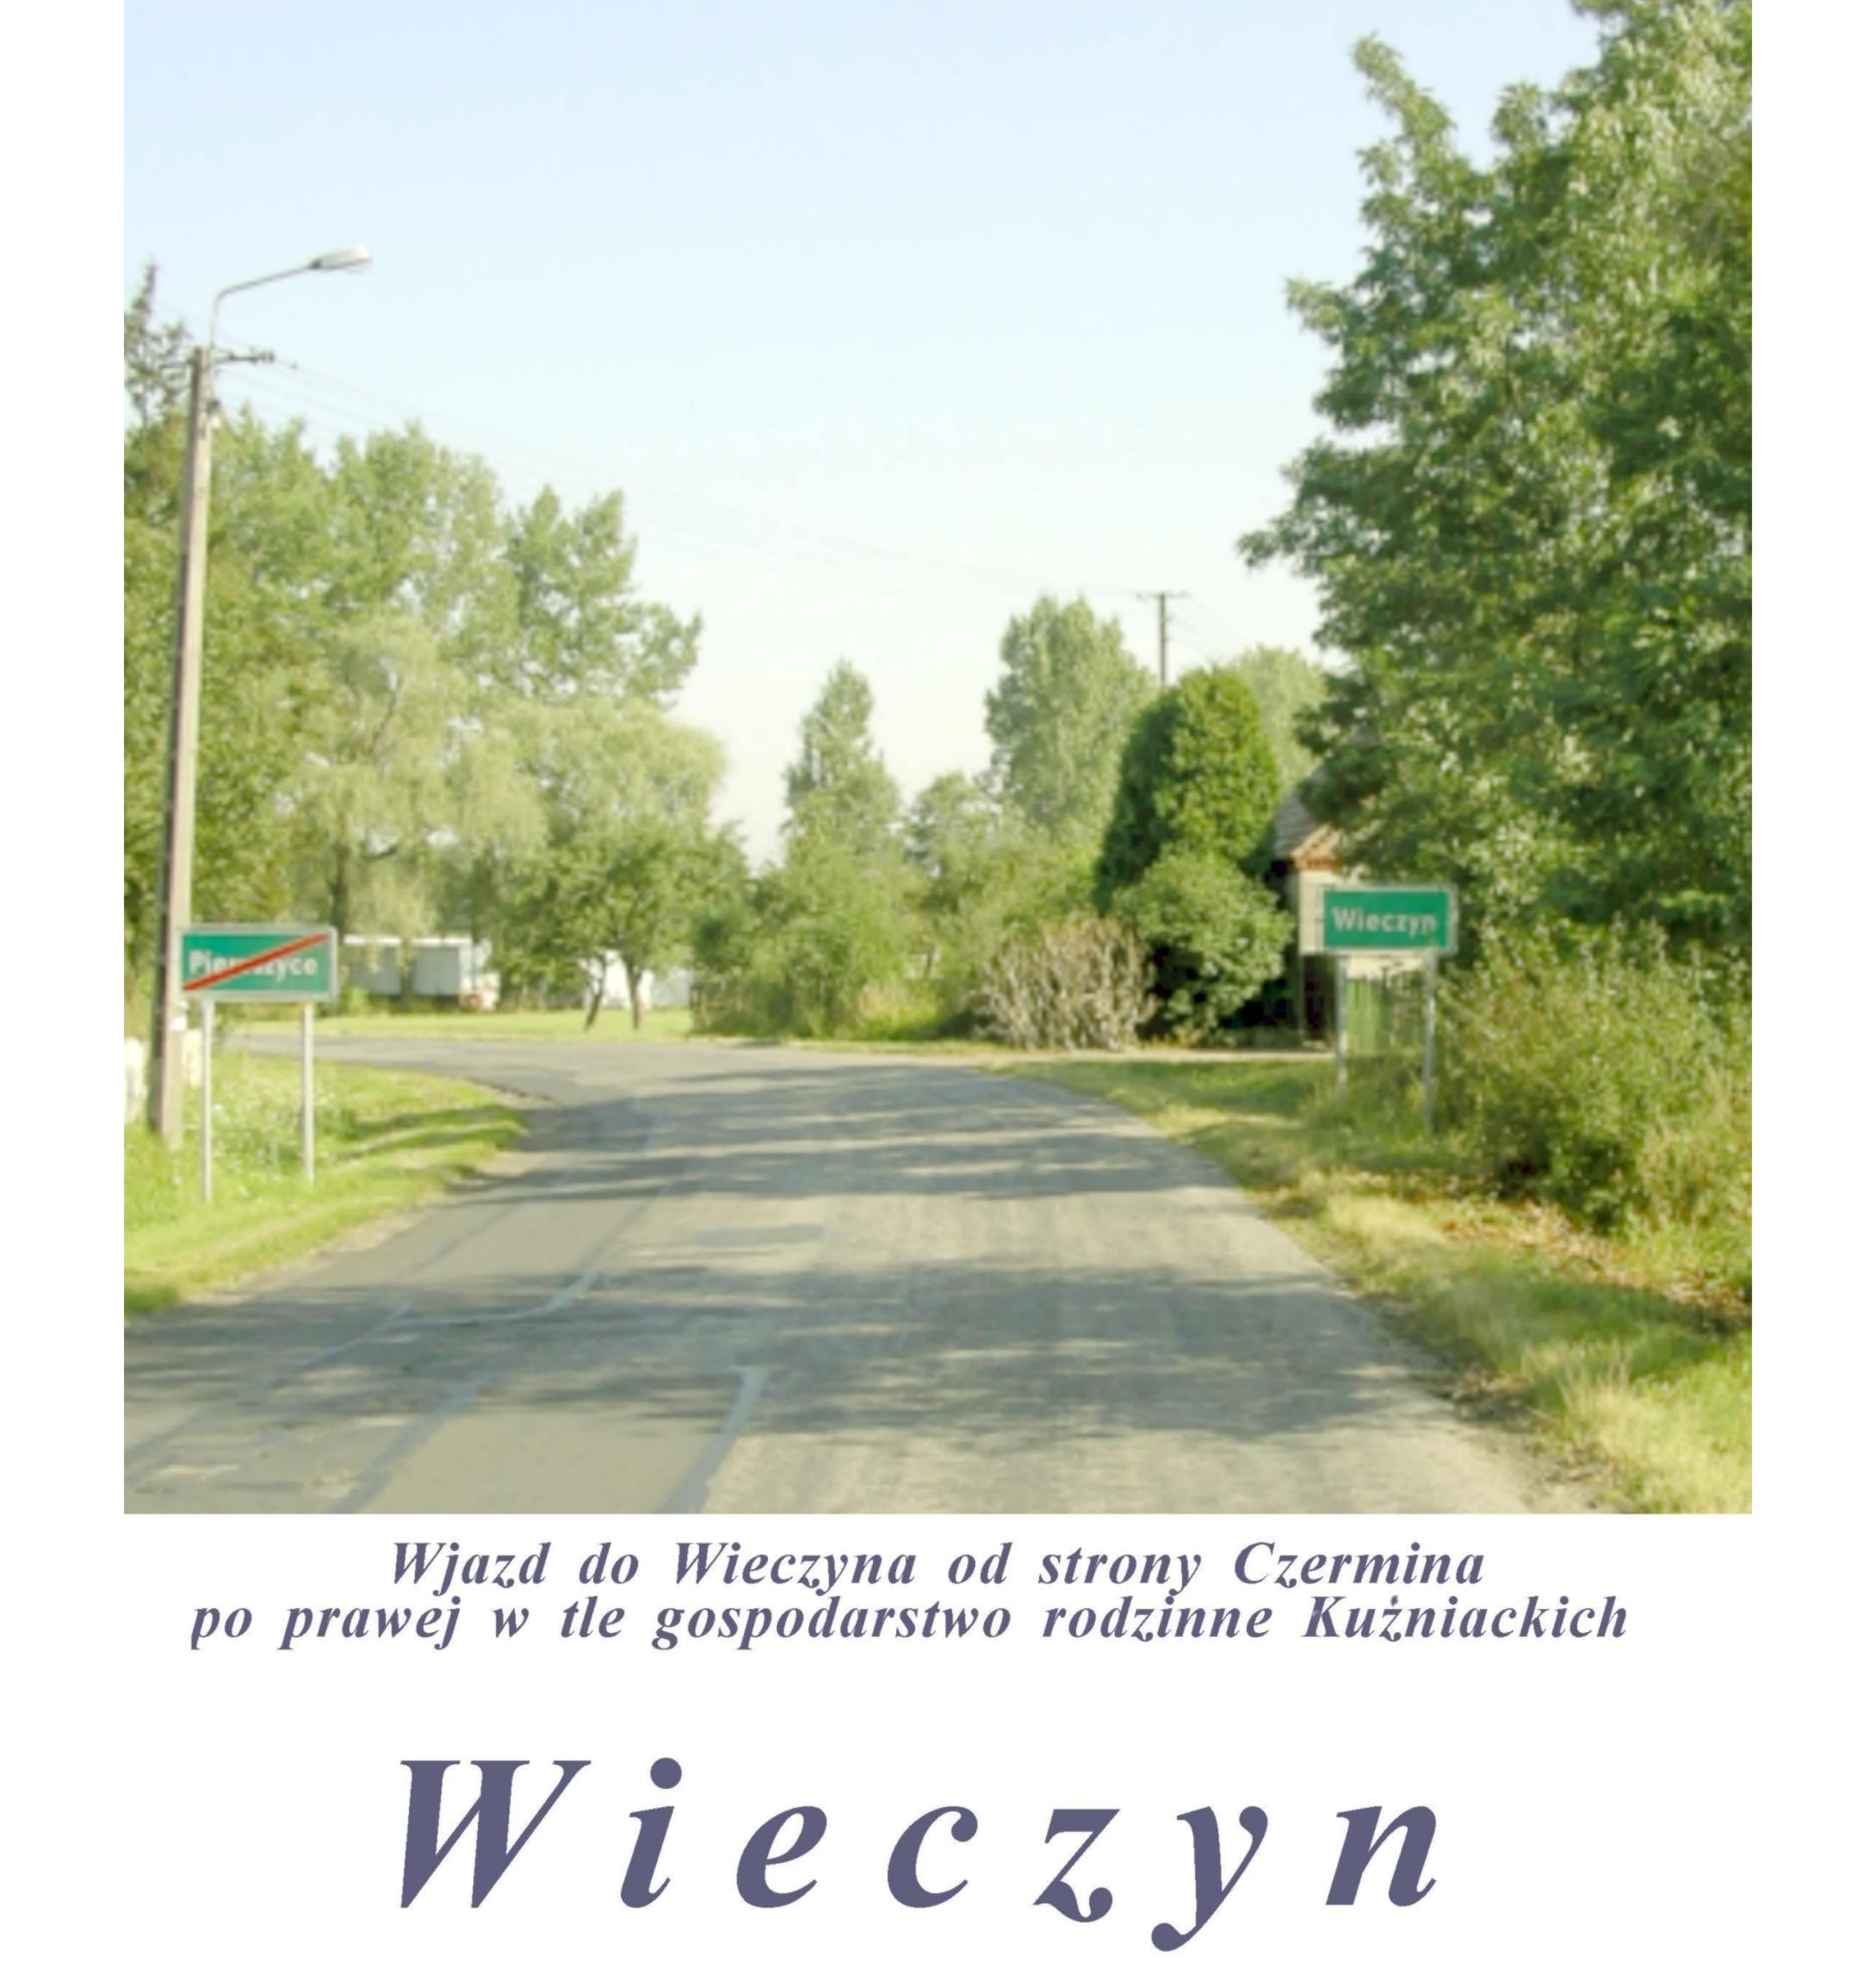 kronika wieczyna - aaae-Wjazd do Wieczyna od strony Czermina.jpg